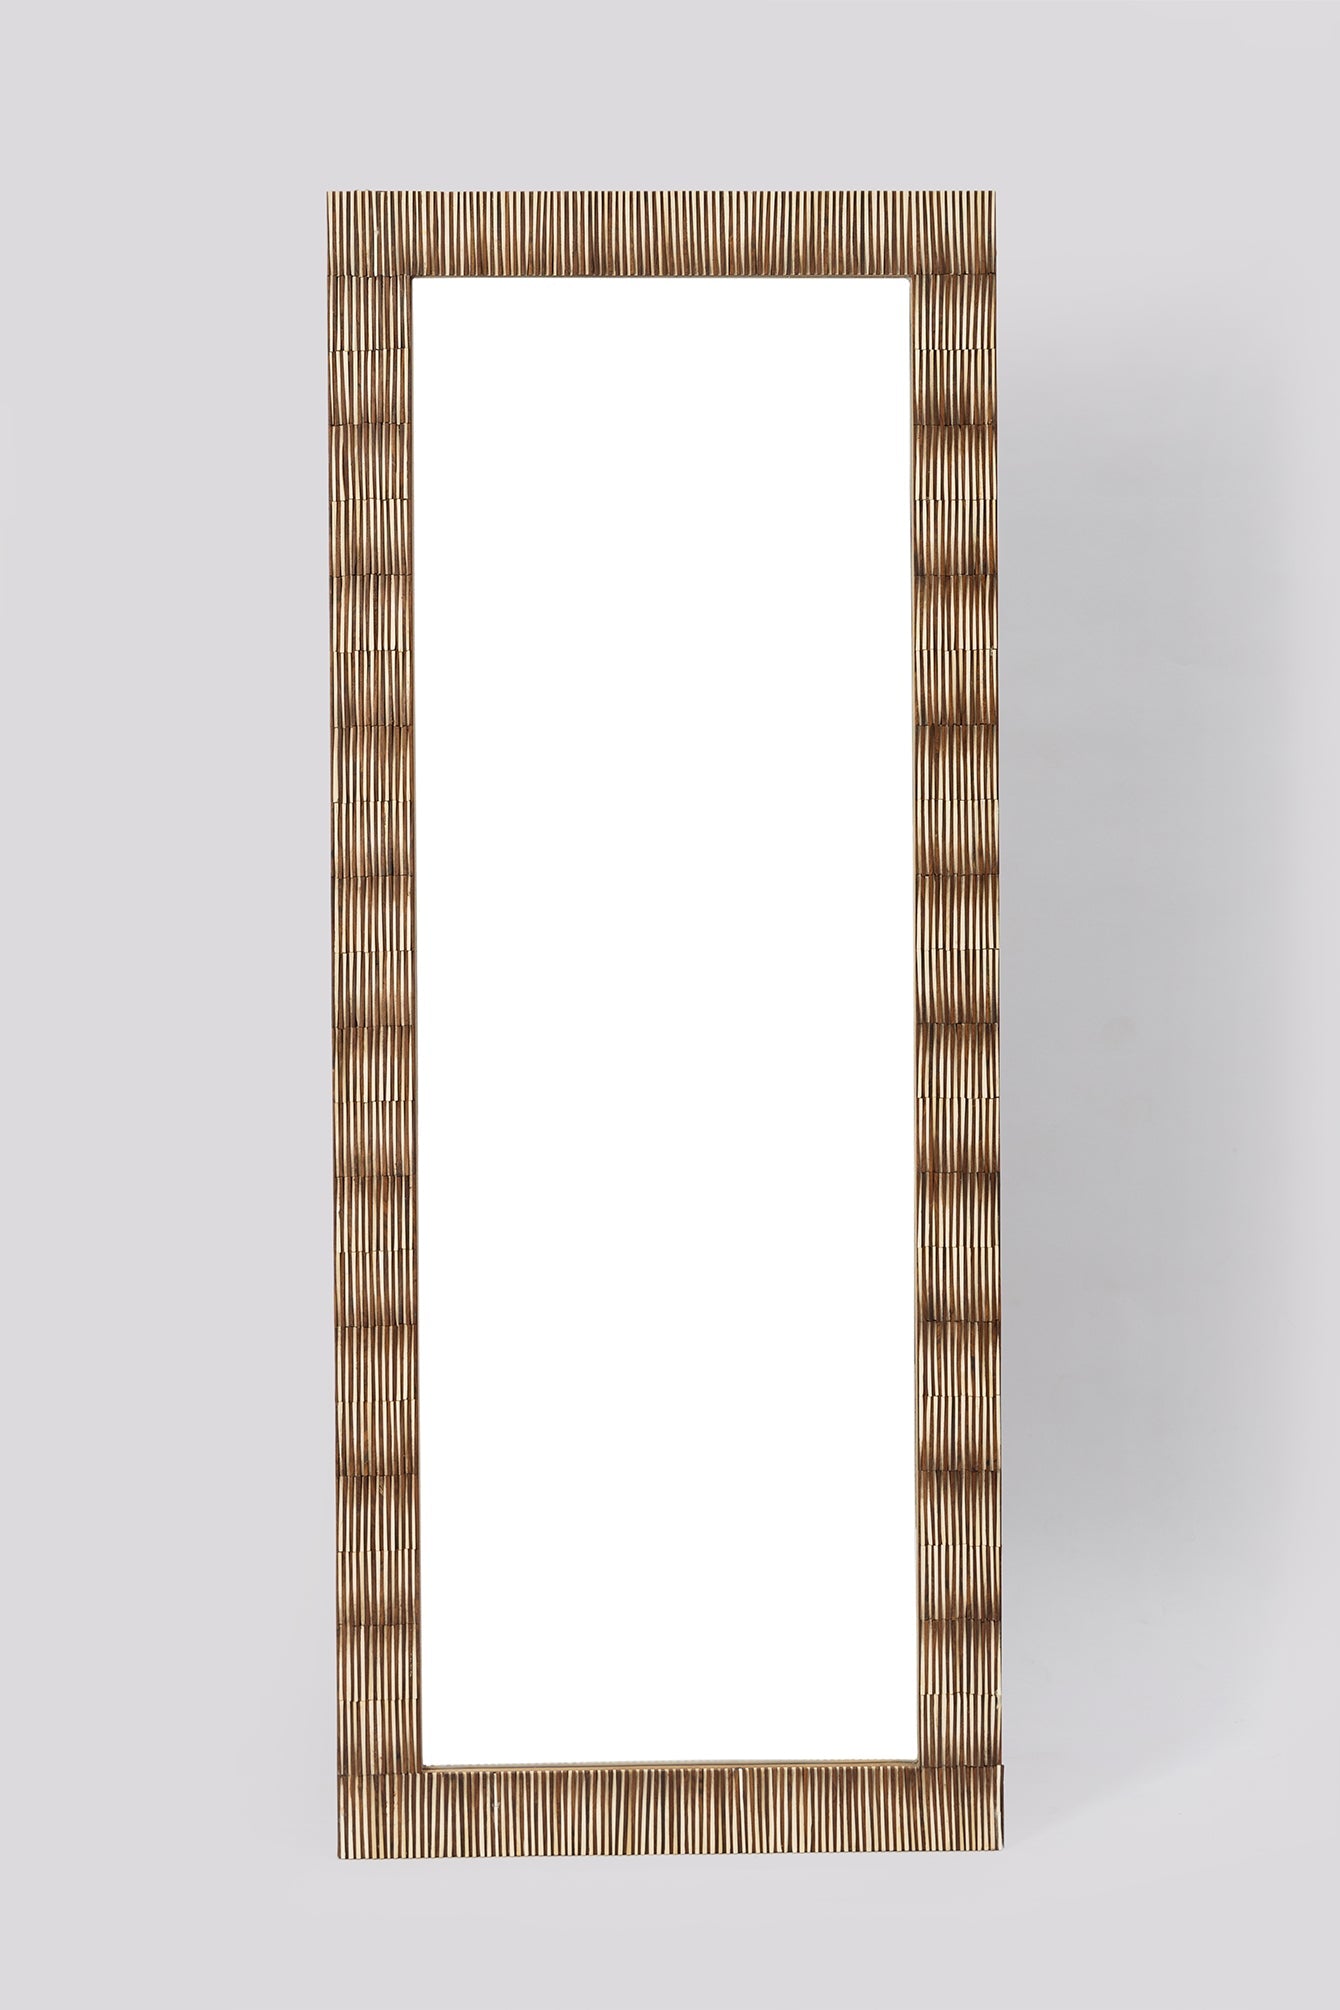 Sillamae Wooden Bone Inlay Mirror Frame With Mirror